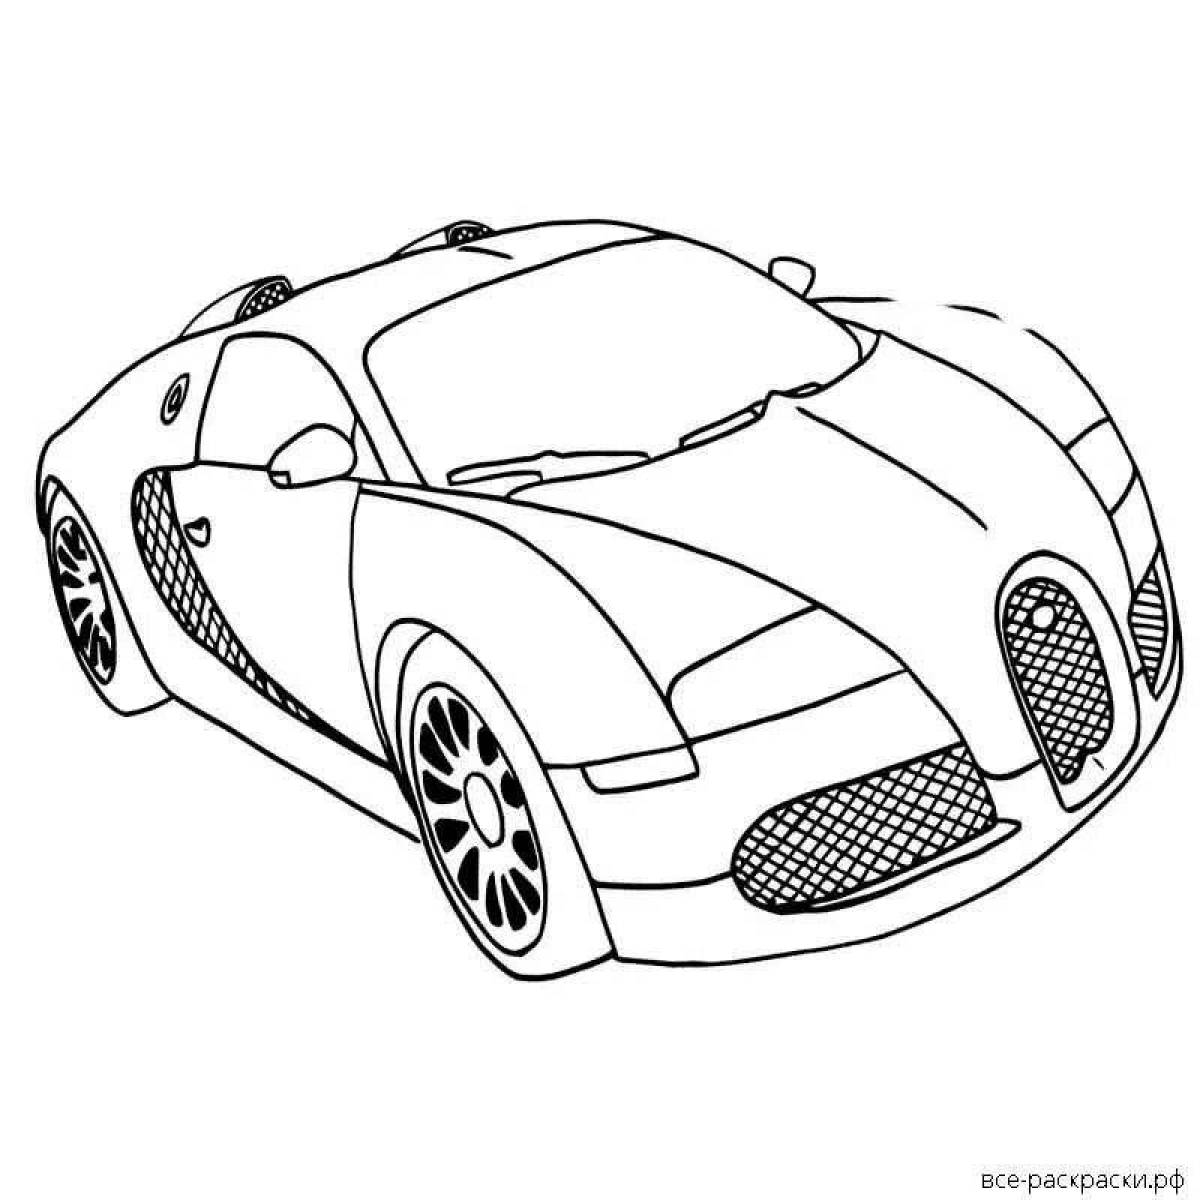 Bugatti diva shiny coloring